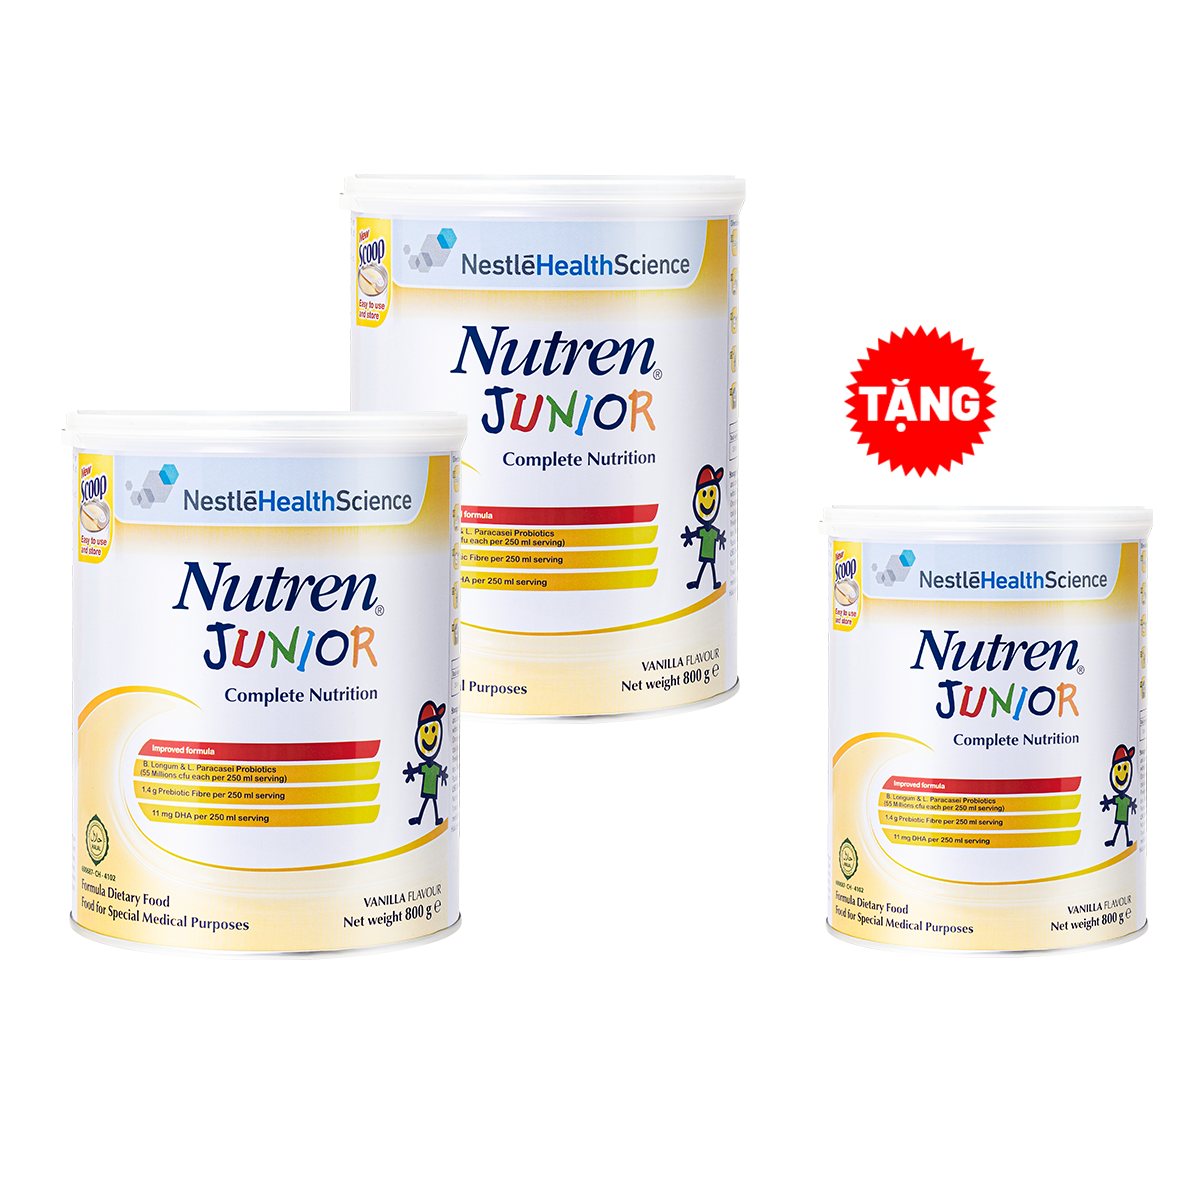 Combo 2 lon thực phẩm dinh dưỡng Nutren Junior Thụy Sĩ 800g/lon dành cho trẻ tử 1 đến 10 tuổi - Tặng 1 lon Nutren Junior 800g